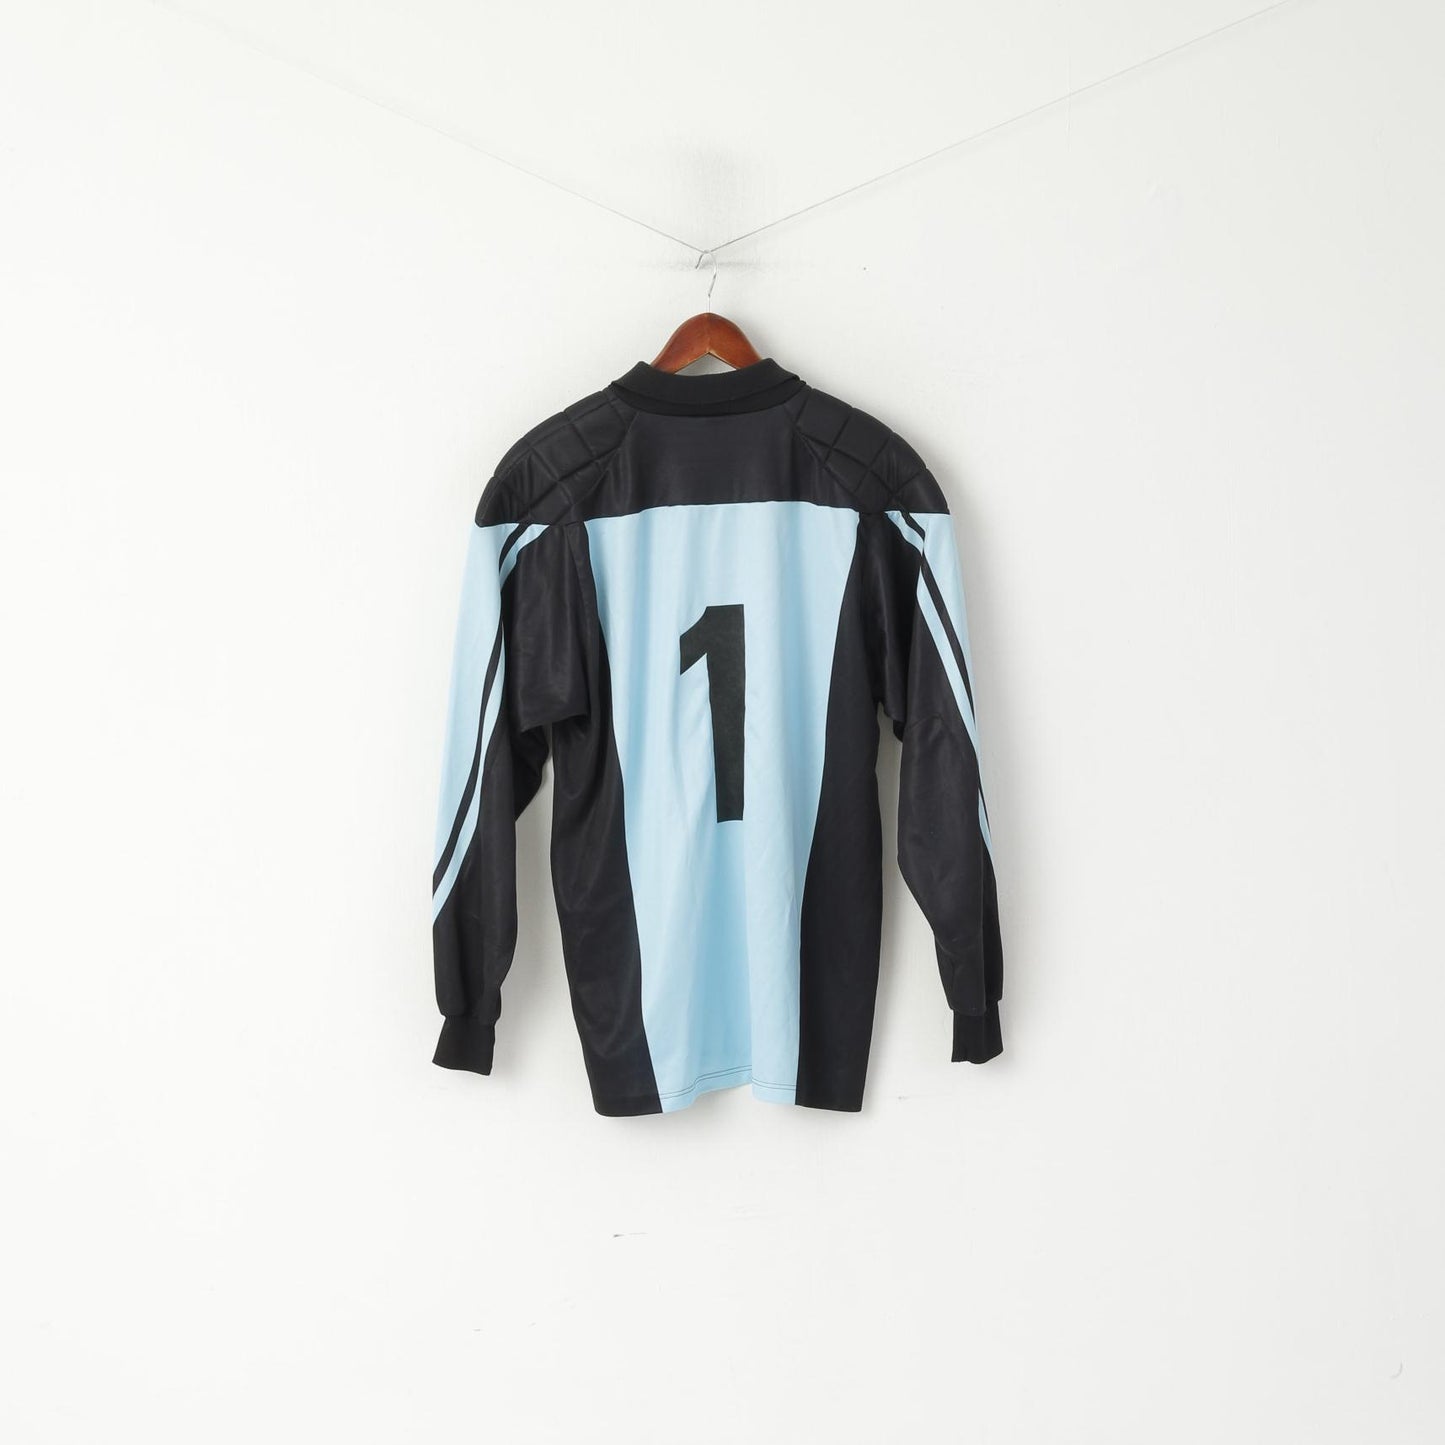 Polo Erima da uomo L/XL blu vintage portiere calcio sport FKP #1 top